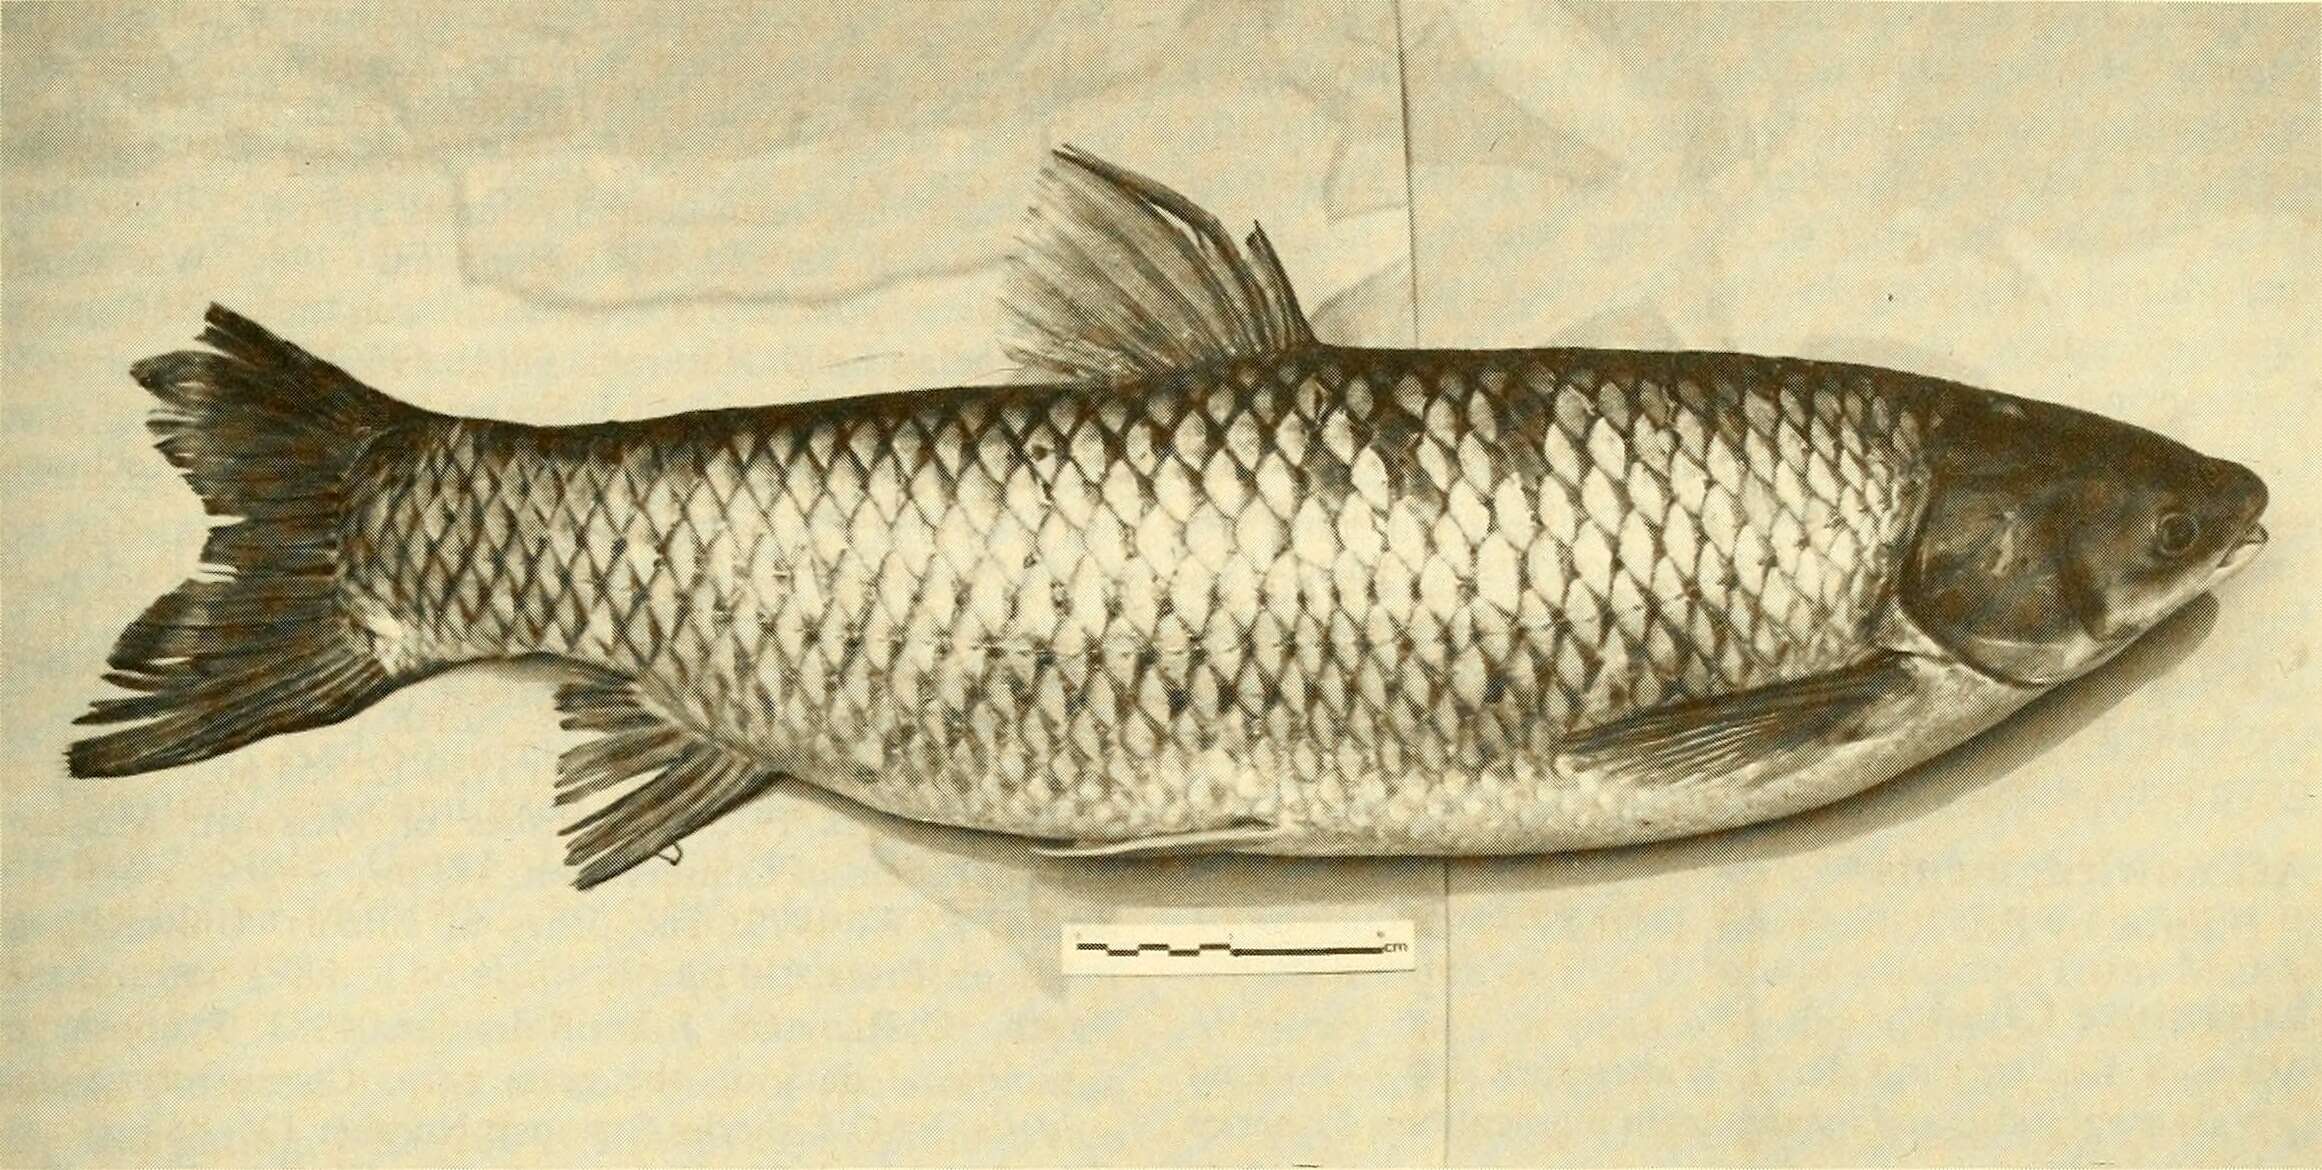 Image of Ctenopharyngodon